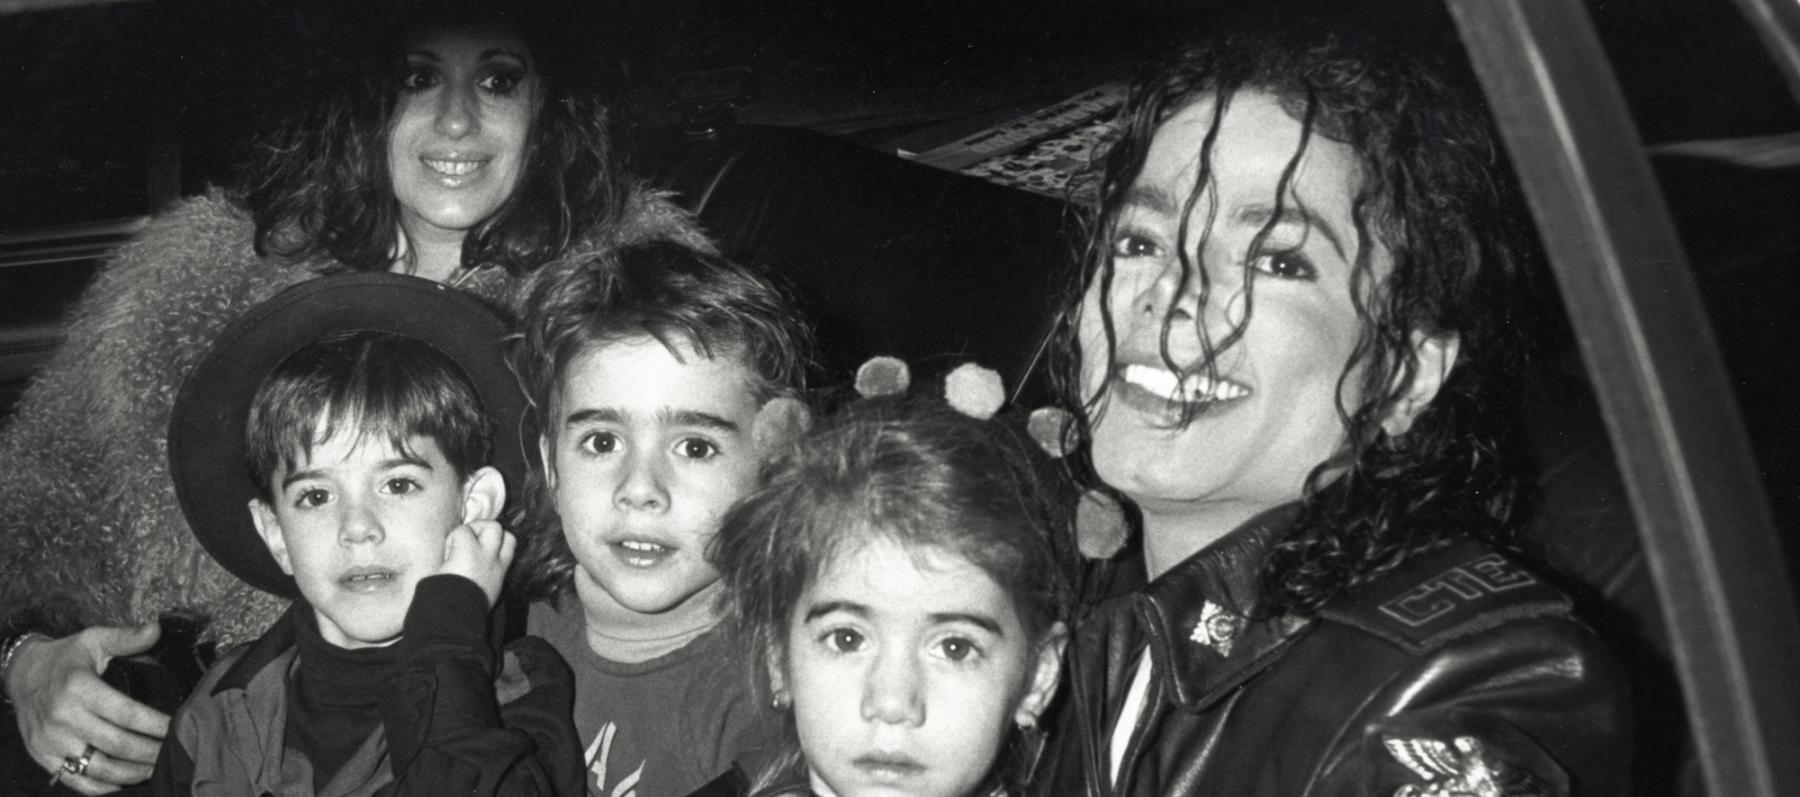 مايكل جاكسون مع أولاده- الصورة من مواقع التواصل الاجتماعي